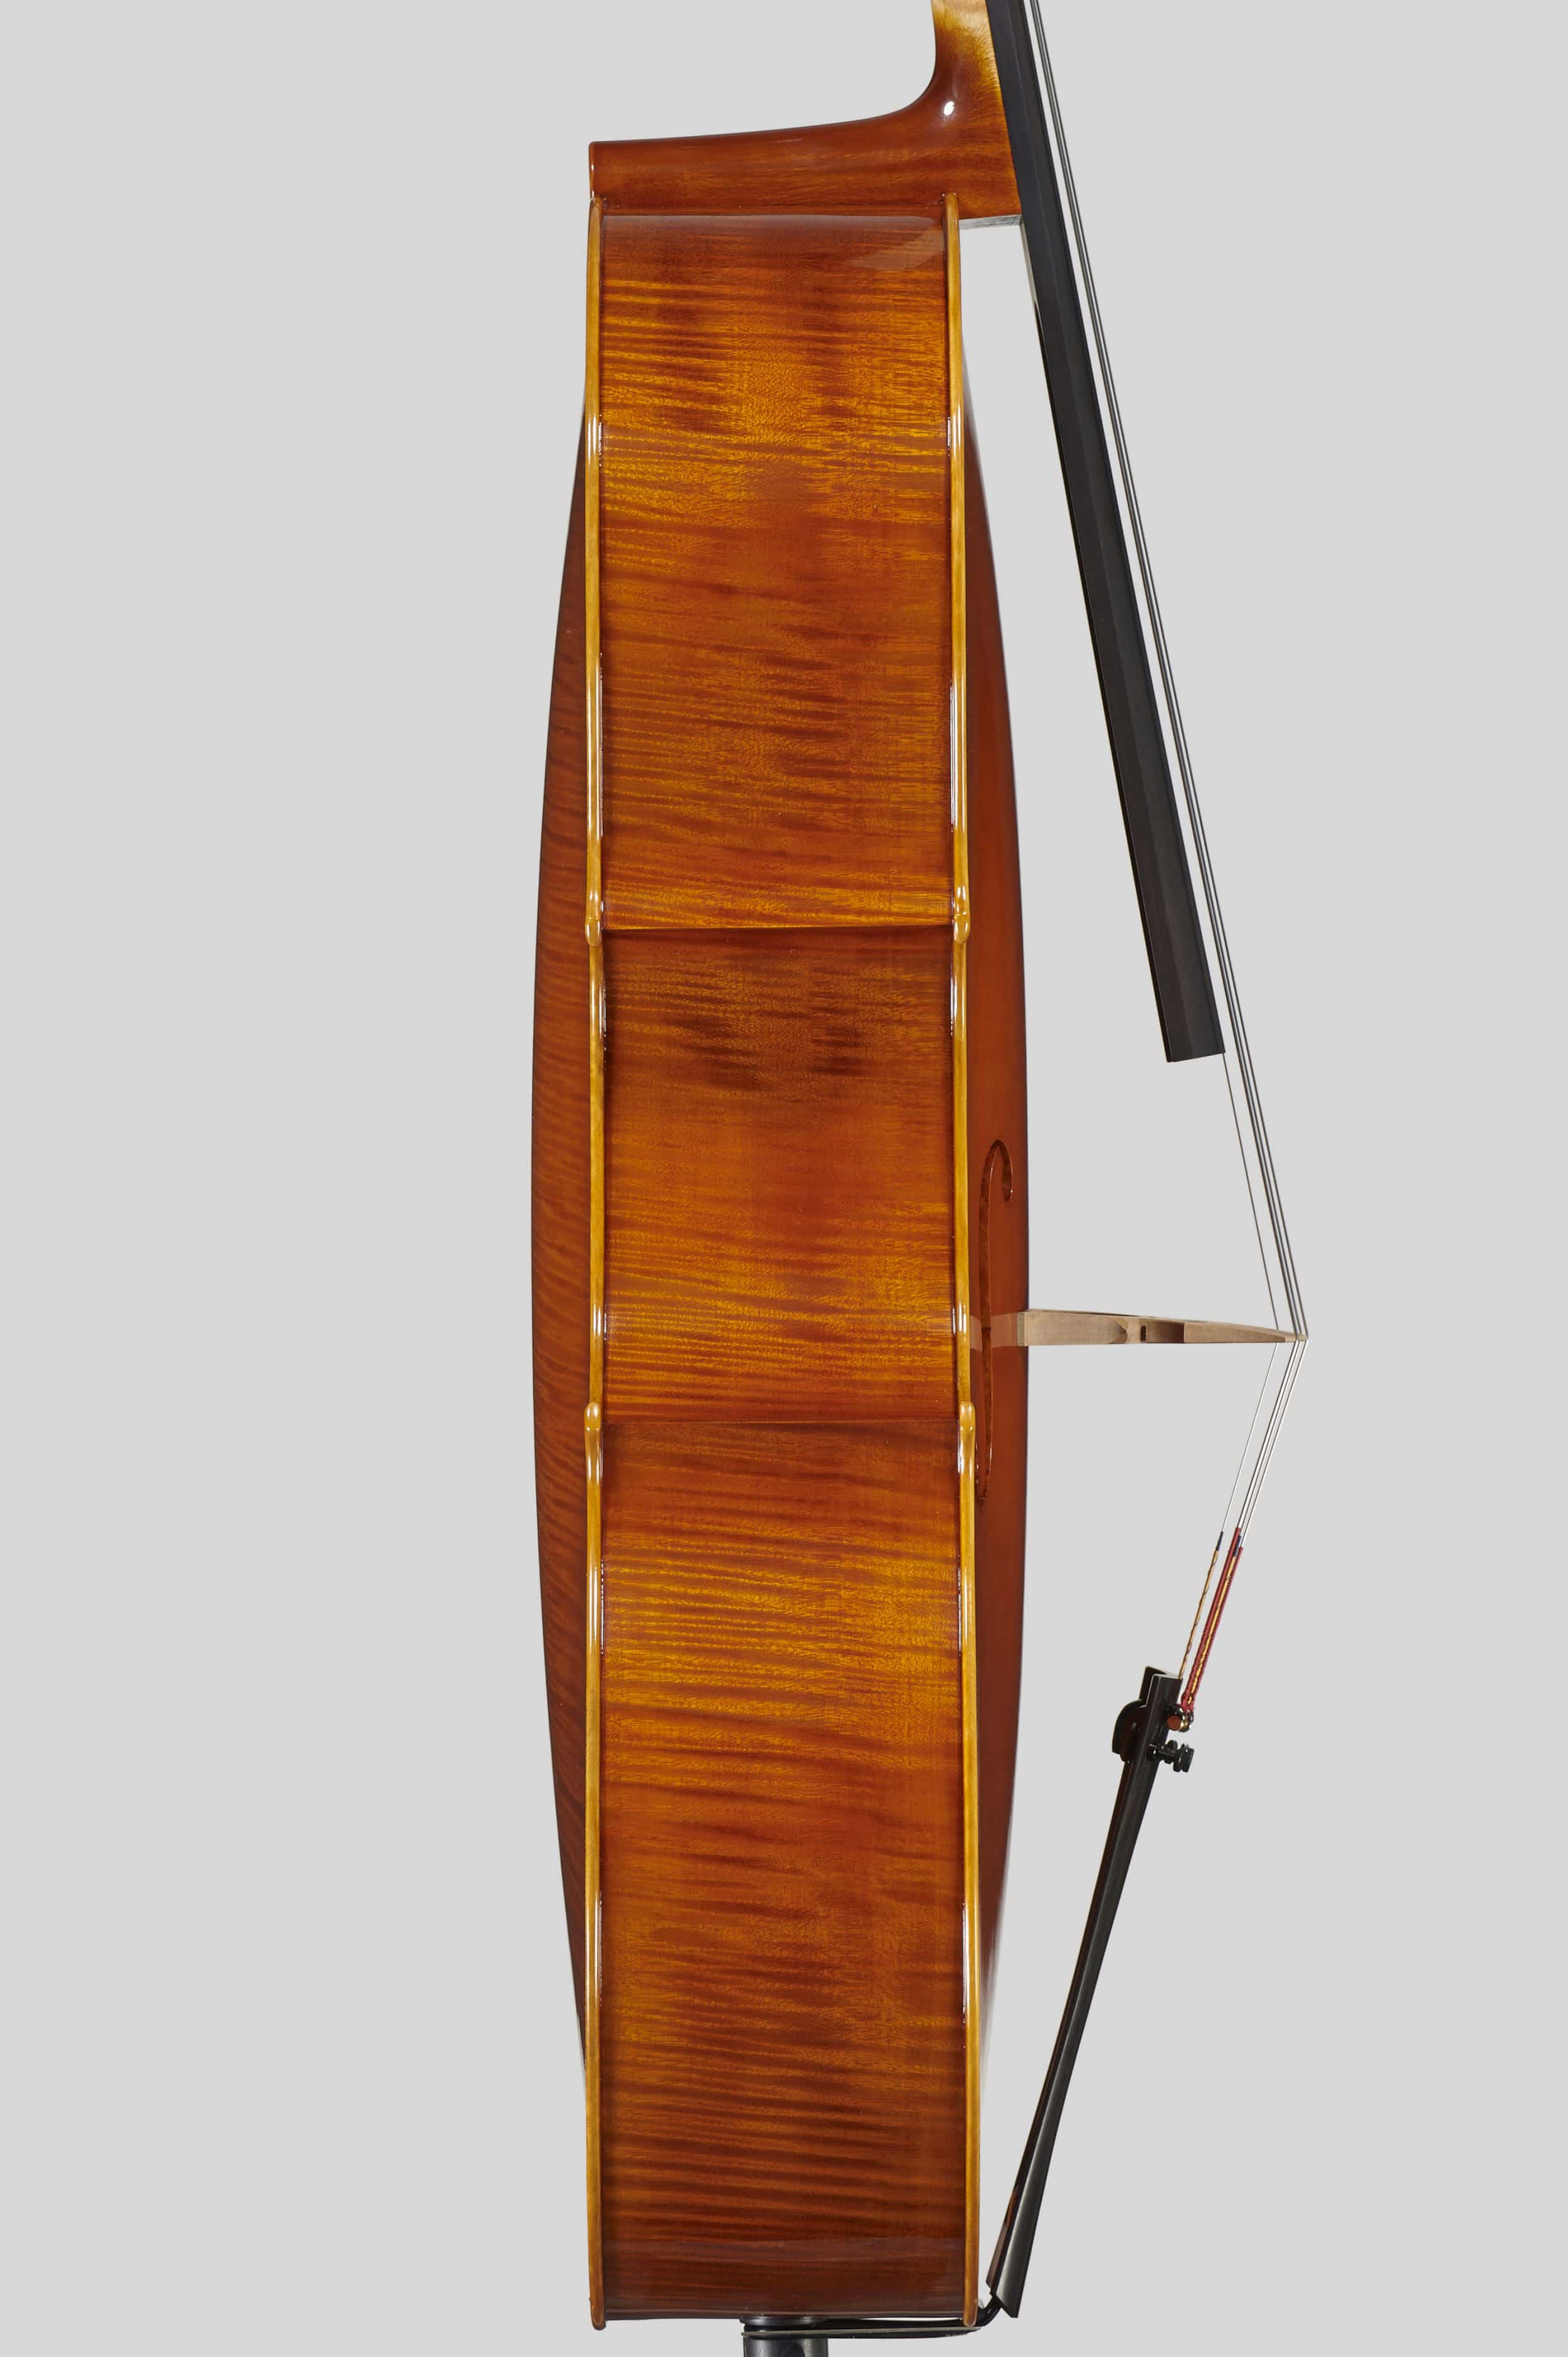 Anno 2012 – Violoncello modello stile A. Stradivari “forma B” - “Mara” 1711 - Profilo